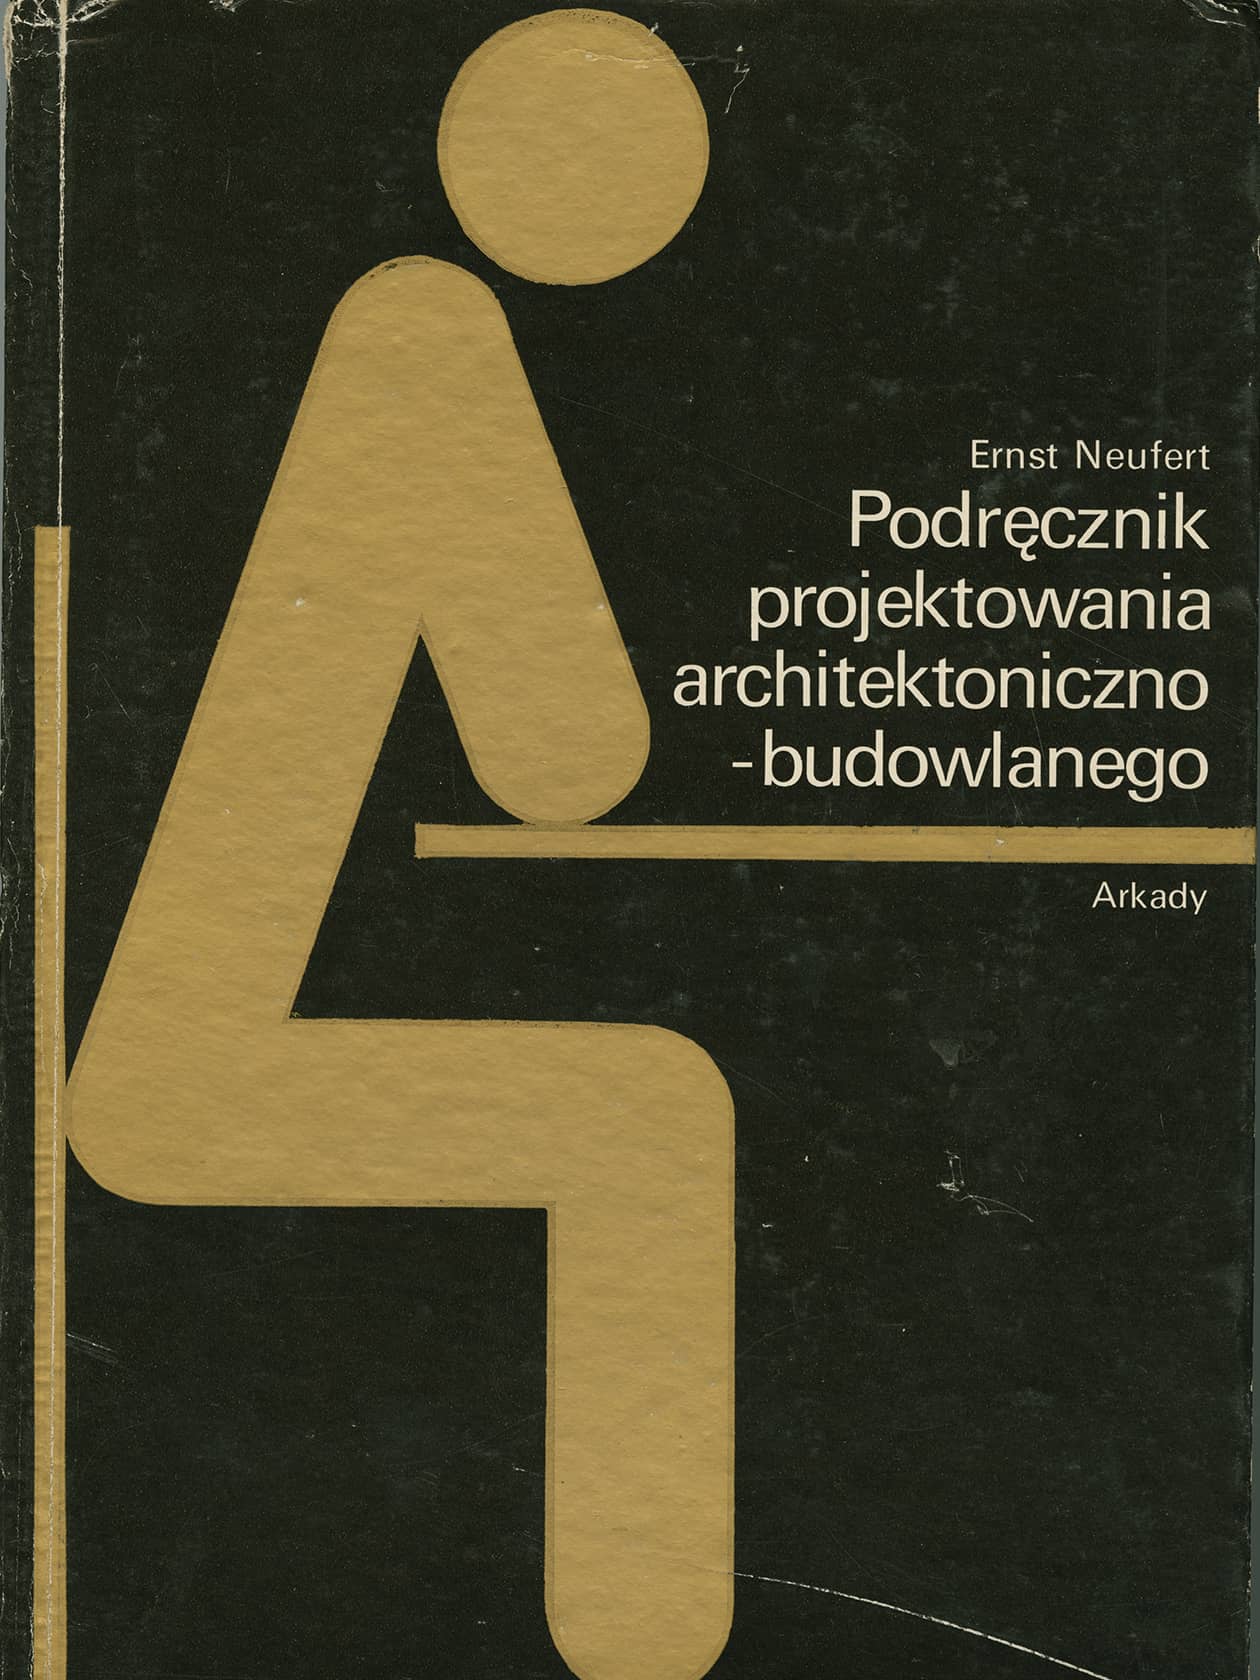 Polish edition of the Bauentwurfslehre of Ernst Neufert, 1980